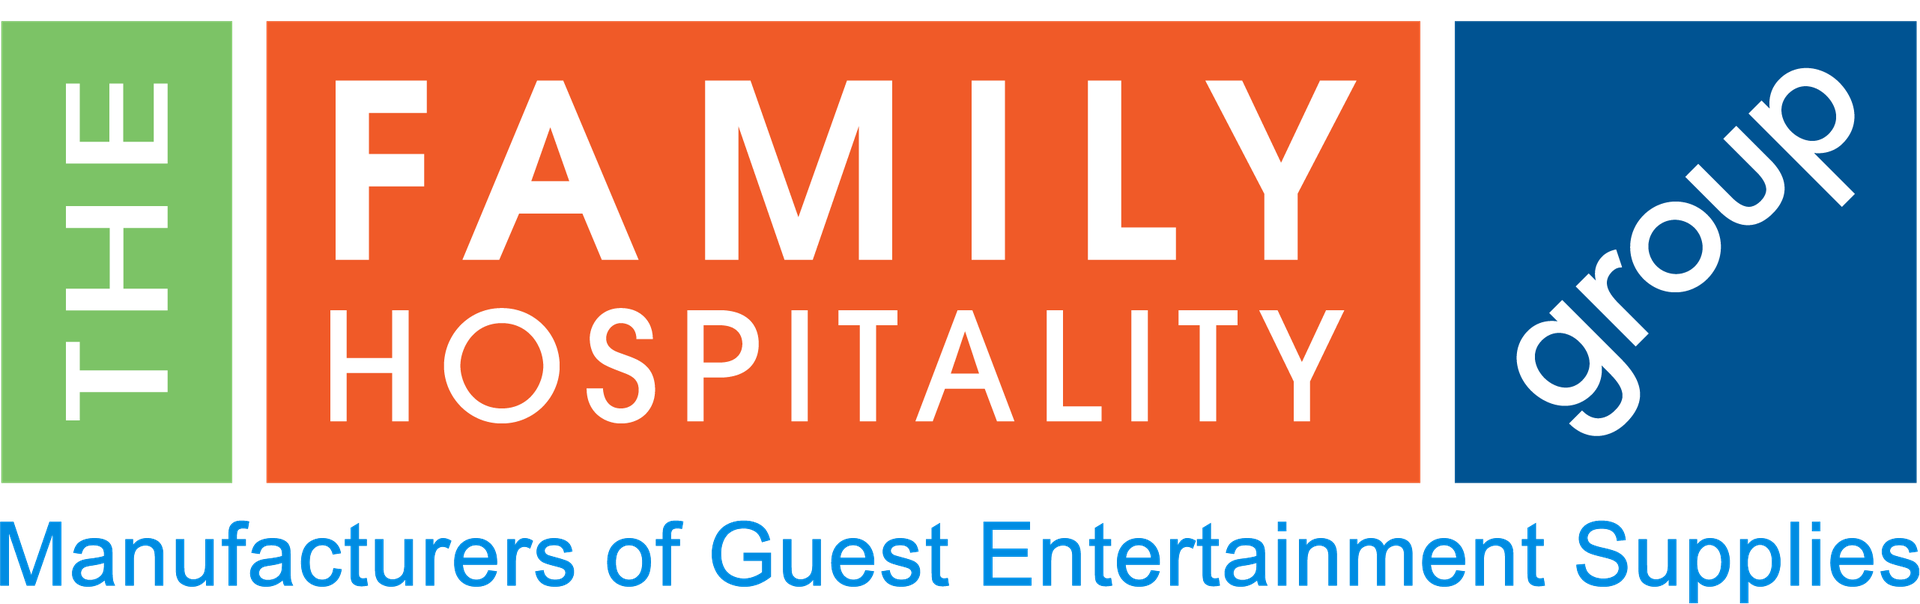 Family Hospitality